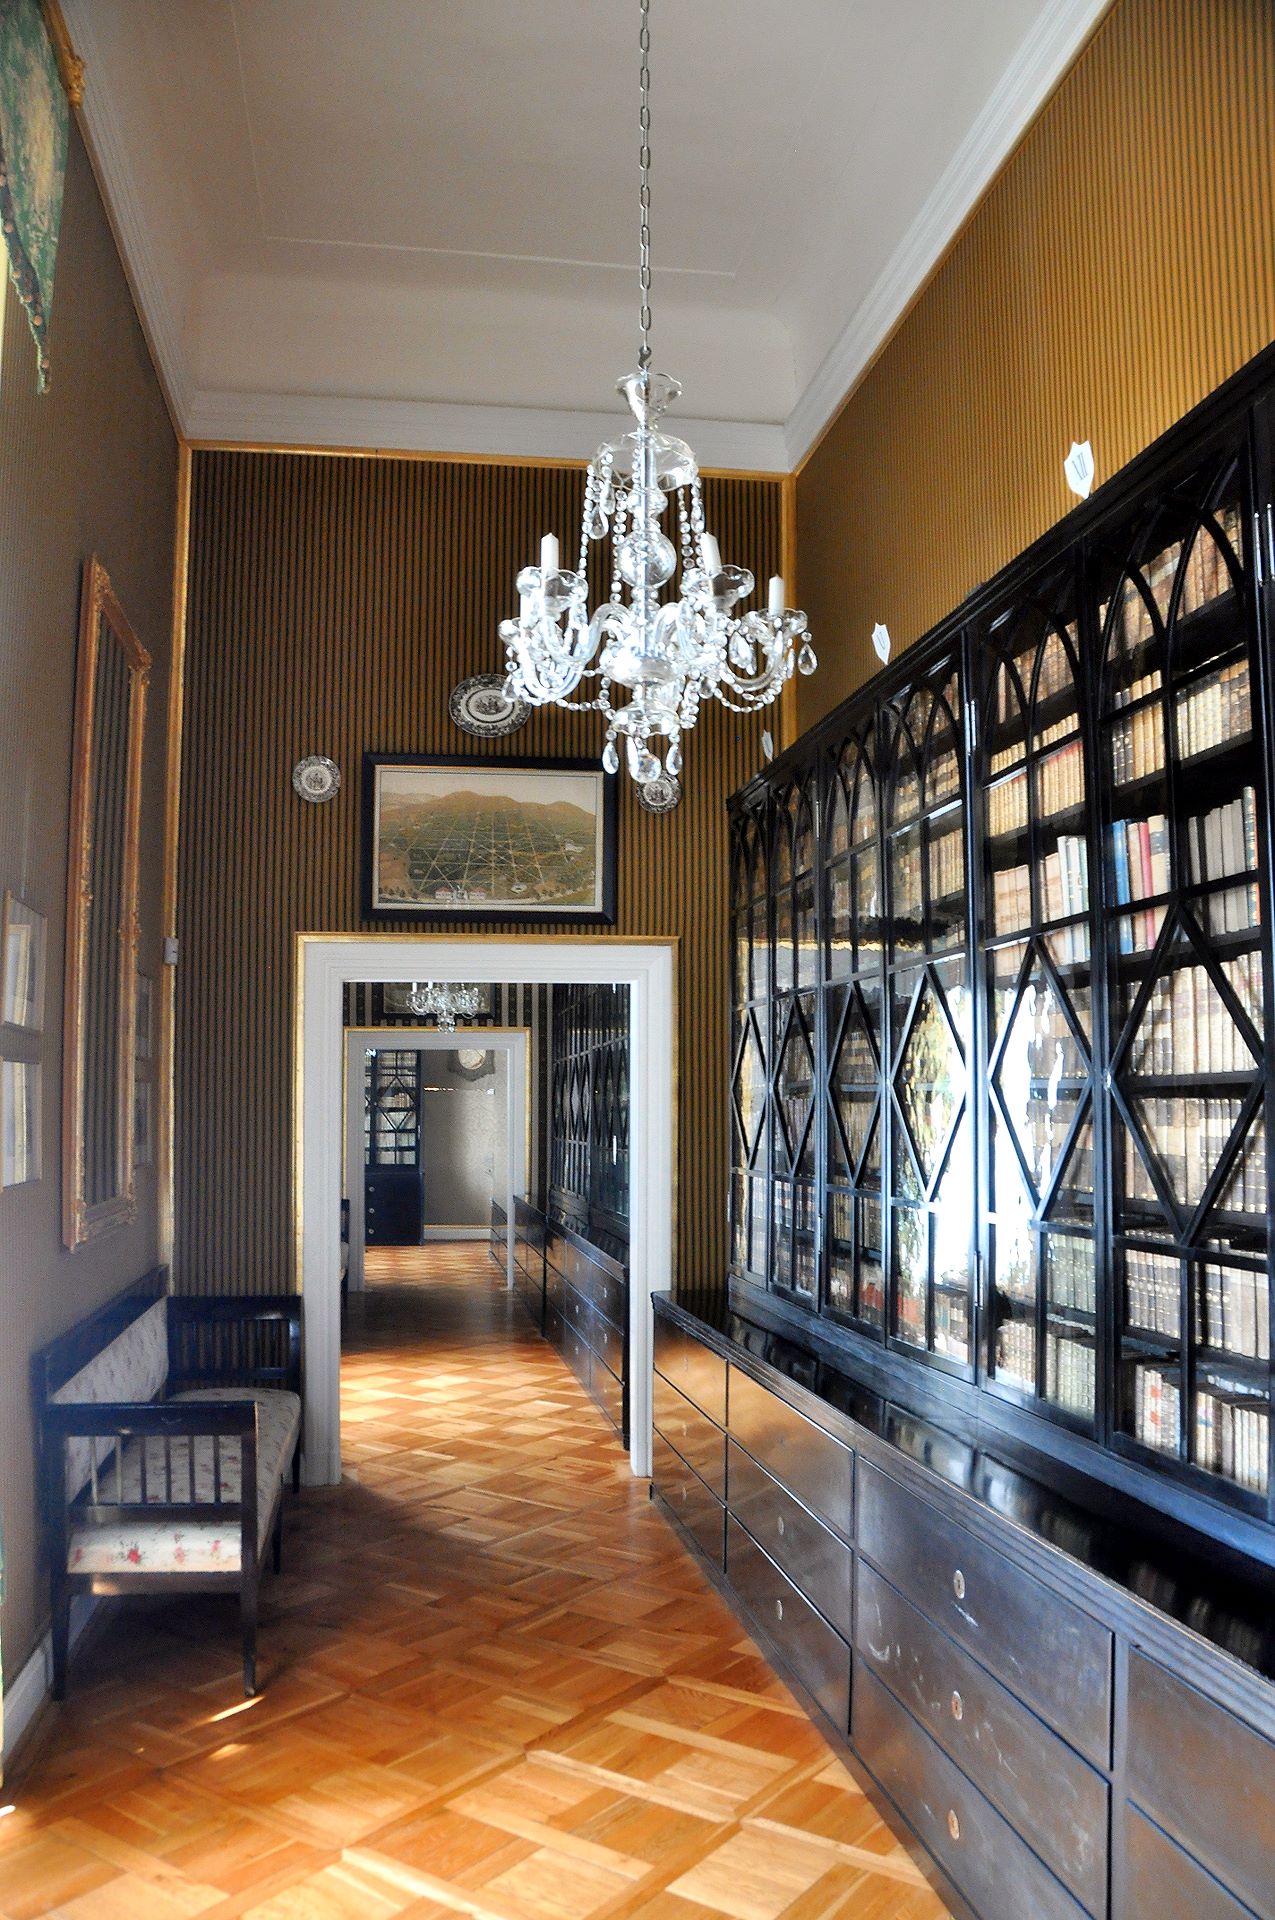 Über vier Räume erstreckt sich die viele tausende Bände umfassende Schlossbibliothek deutscher, französischer und polnischer Literatur ab dem 17. Jhdt. Bedeutsam sind die hier verwahrten Pläne der Schlossumbauten.